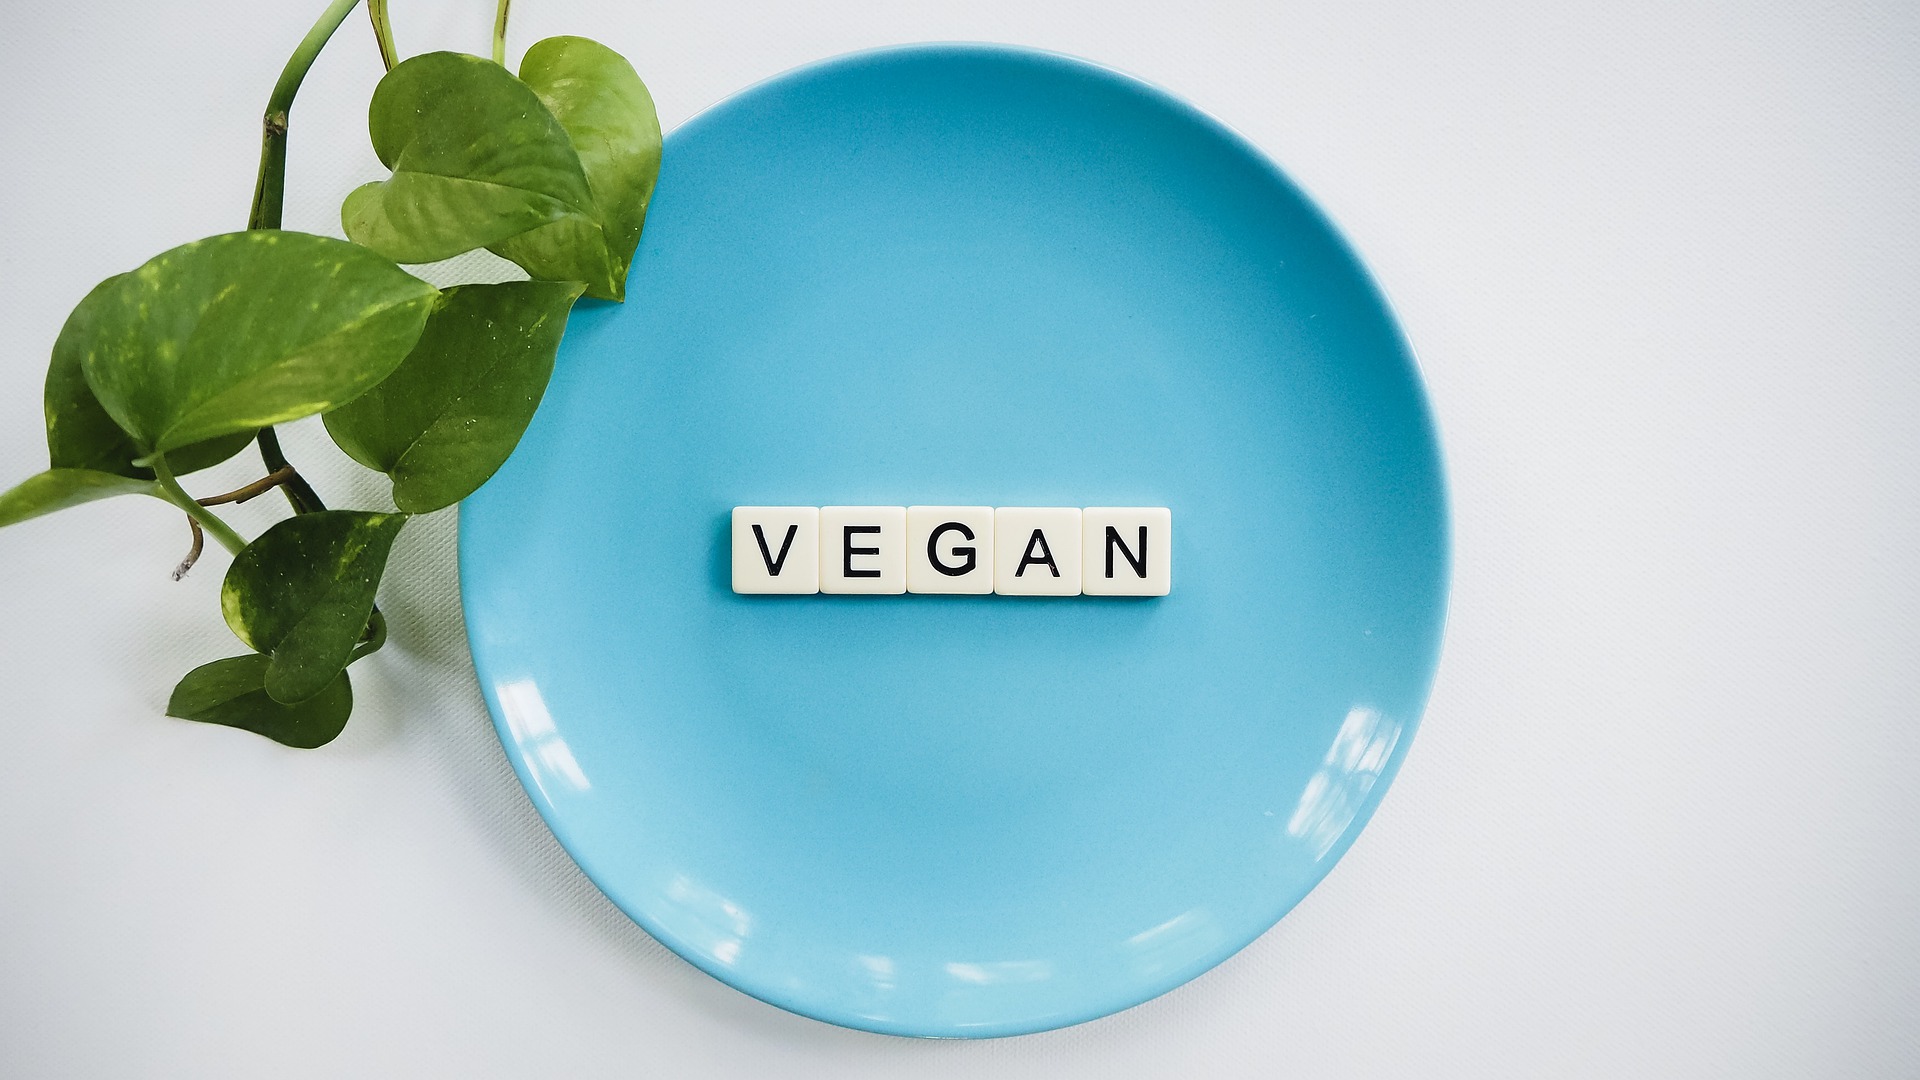 niebieski talerz z literami 'vegan' oraz zielone liście obok talerza